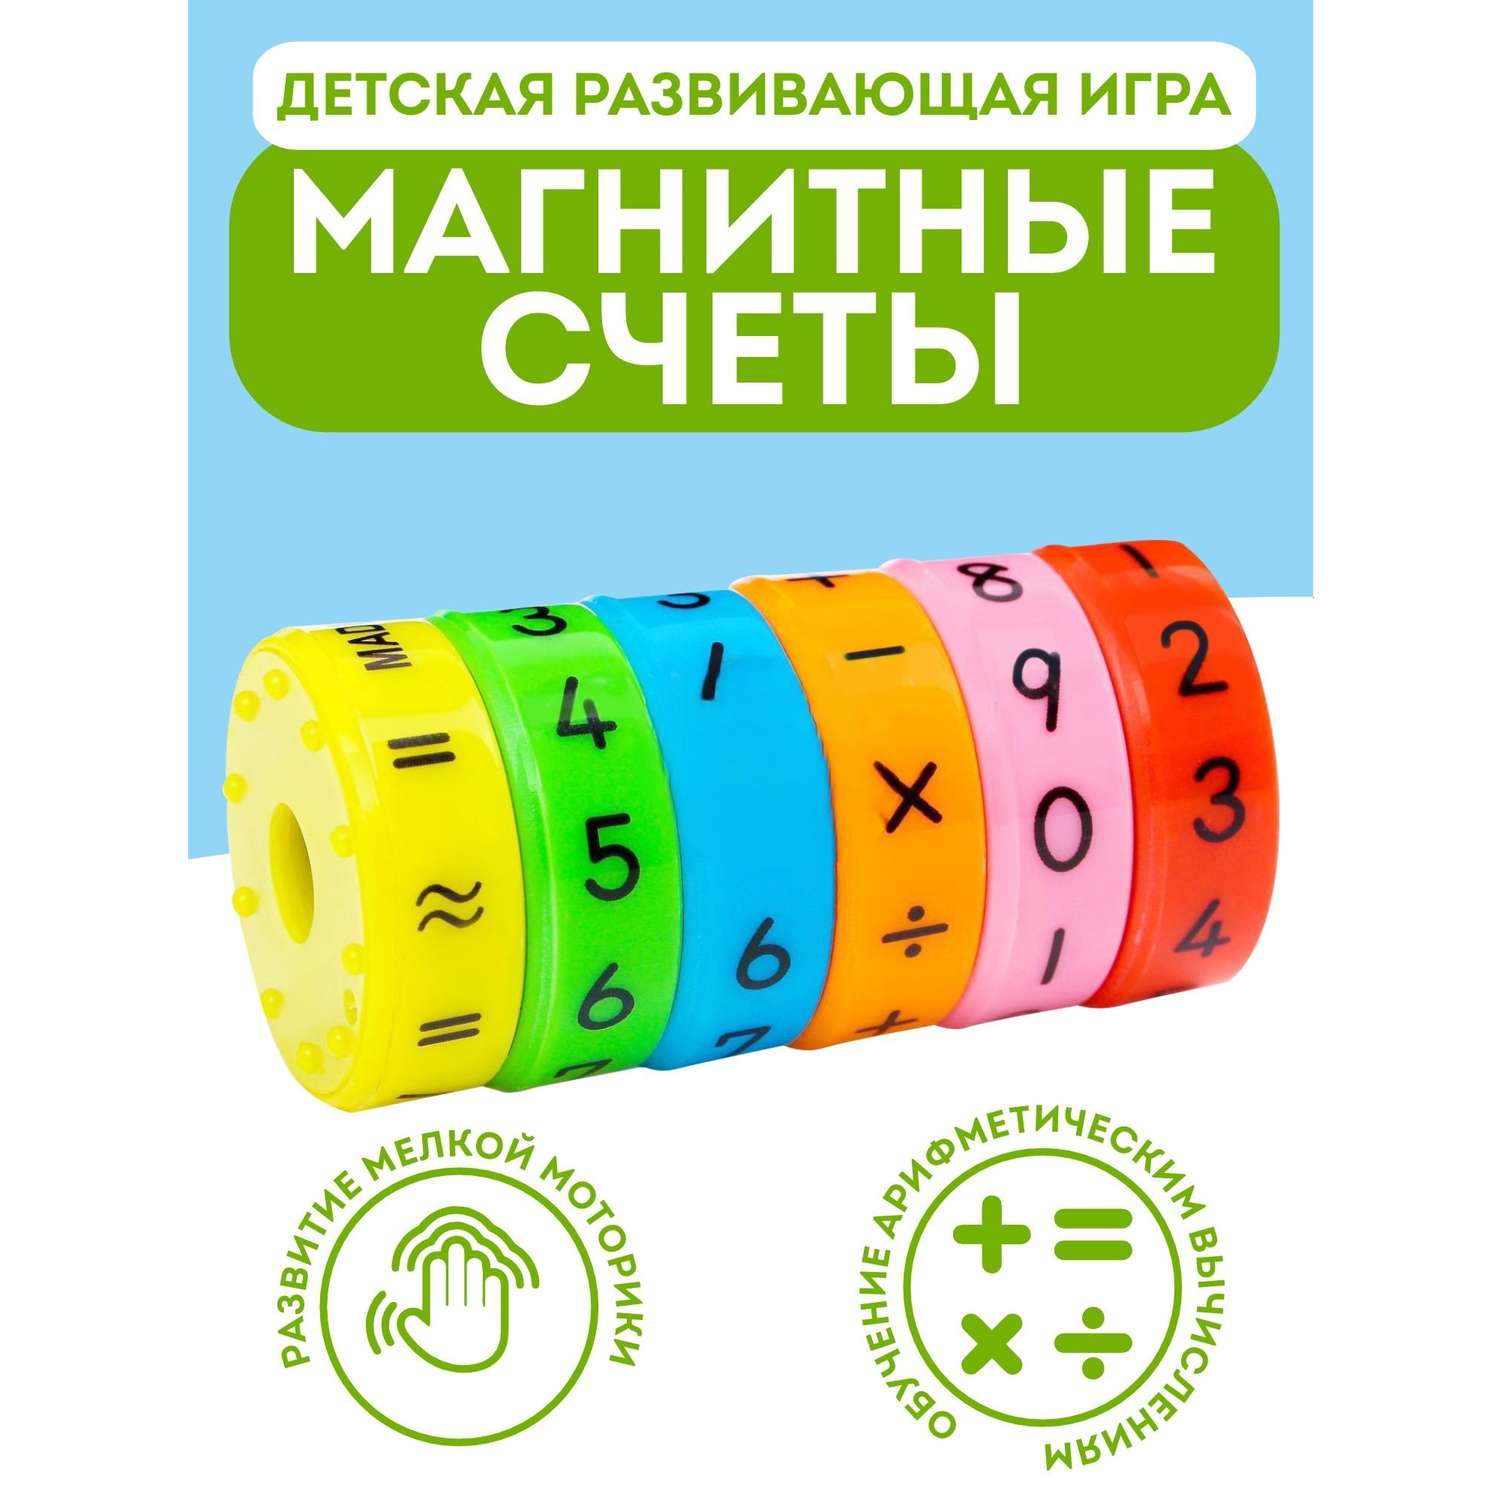 Развивающая игрушка Игрозаврик головоломка для детей магнитные счёты - фото 1